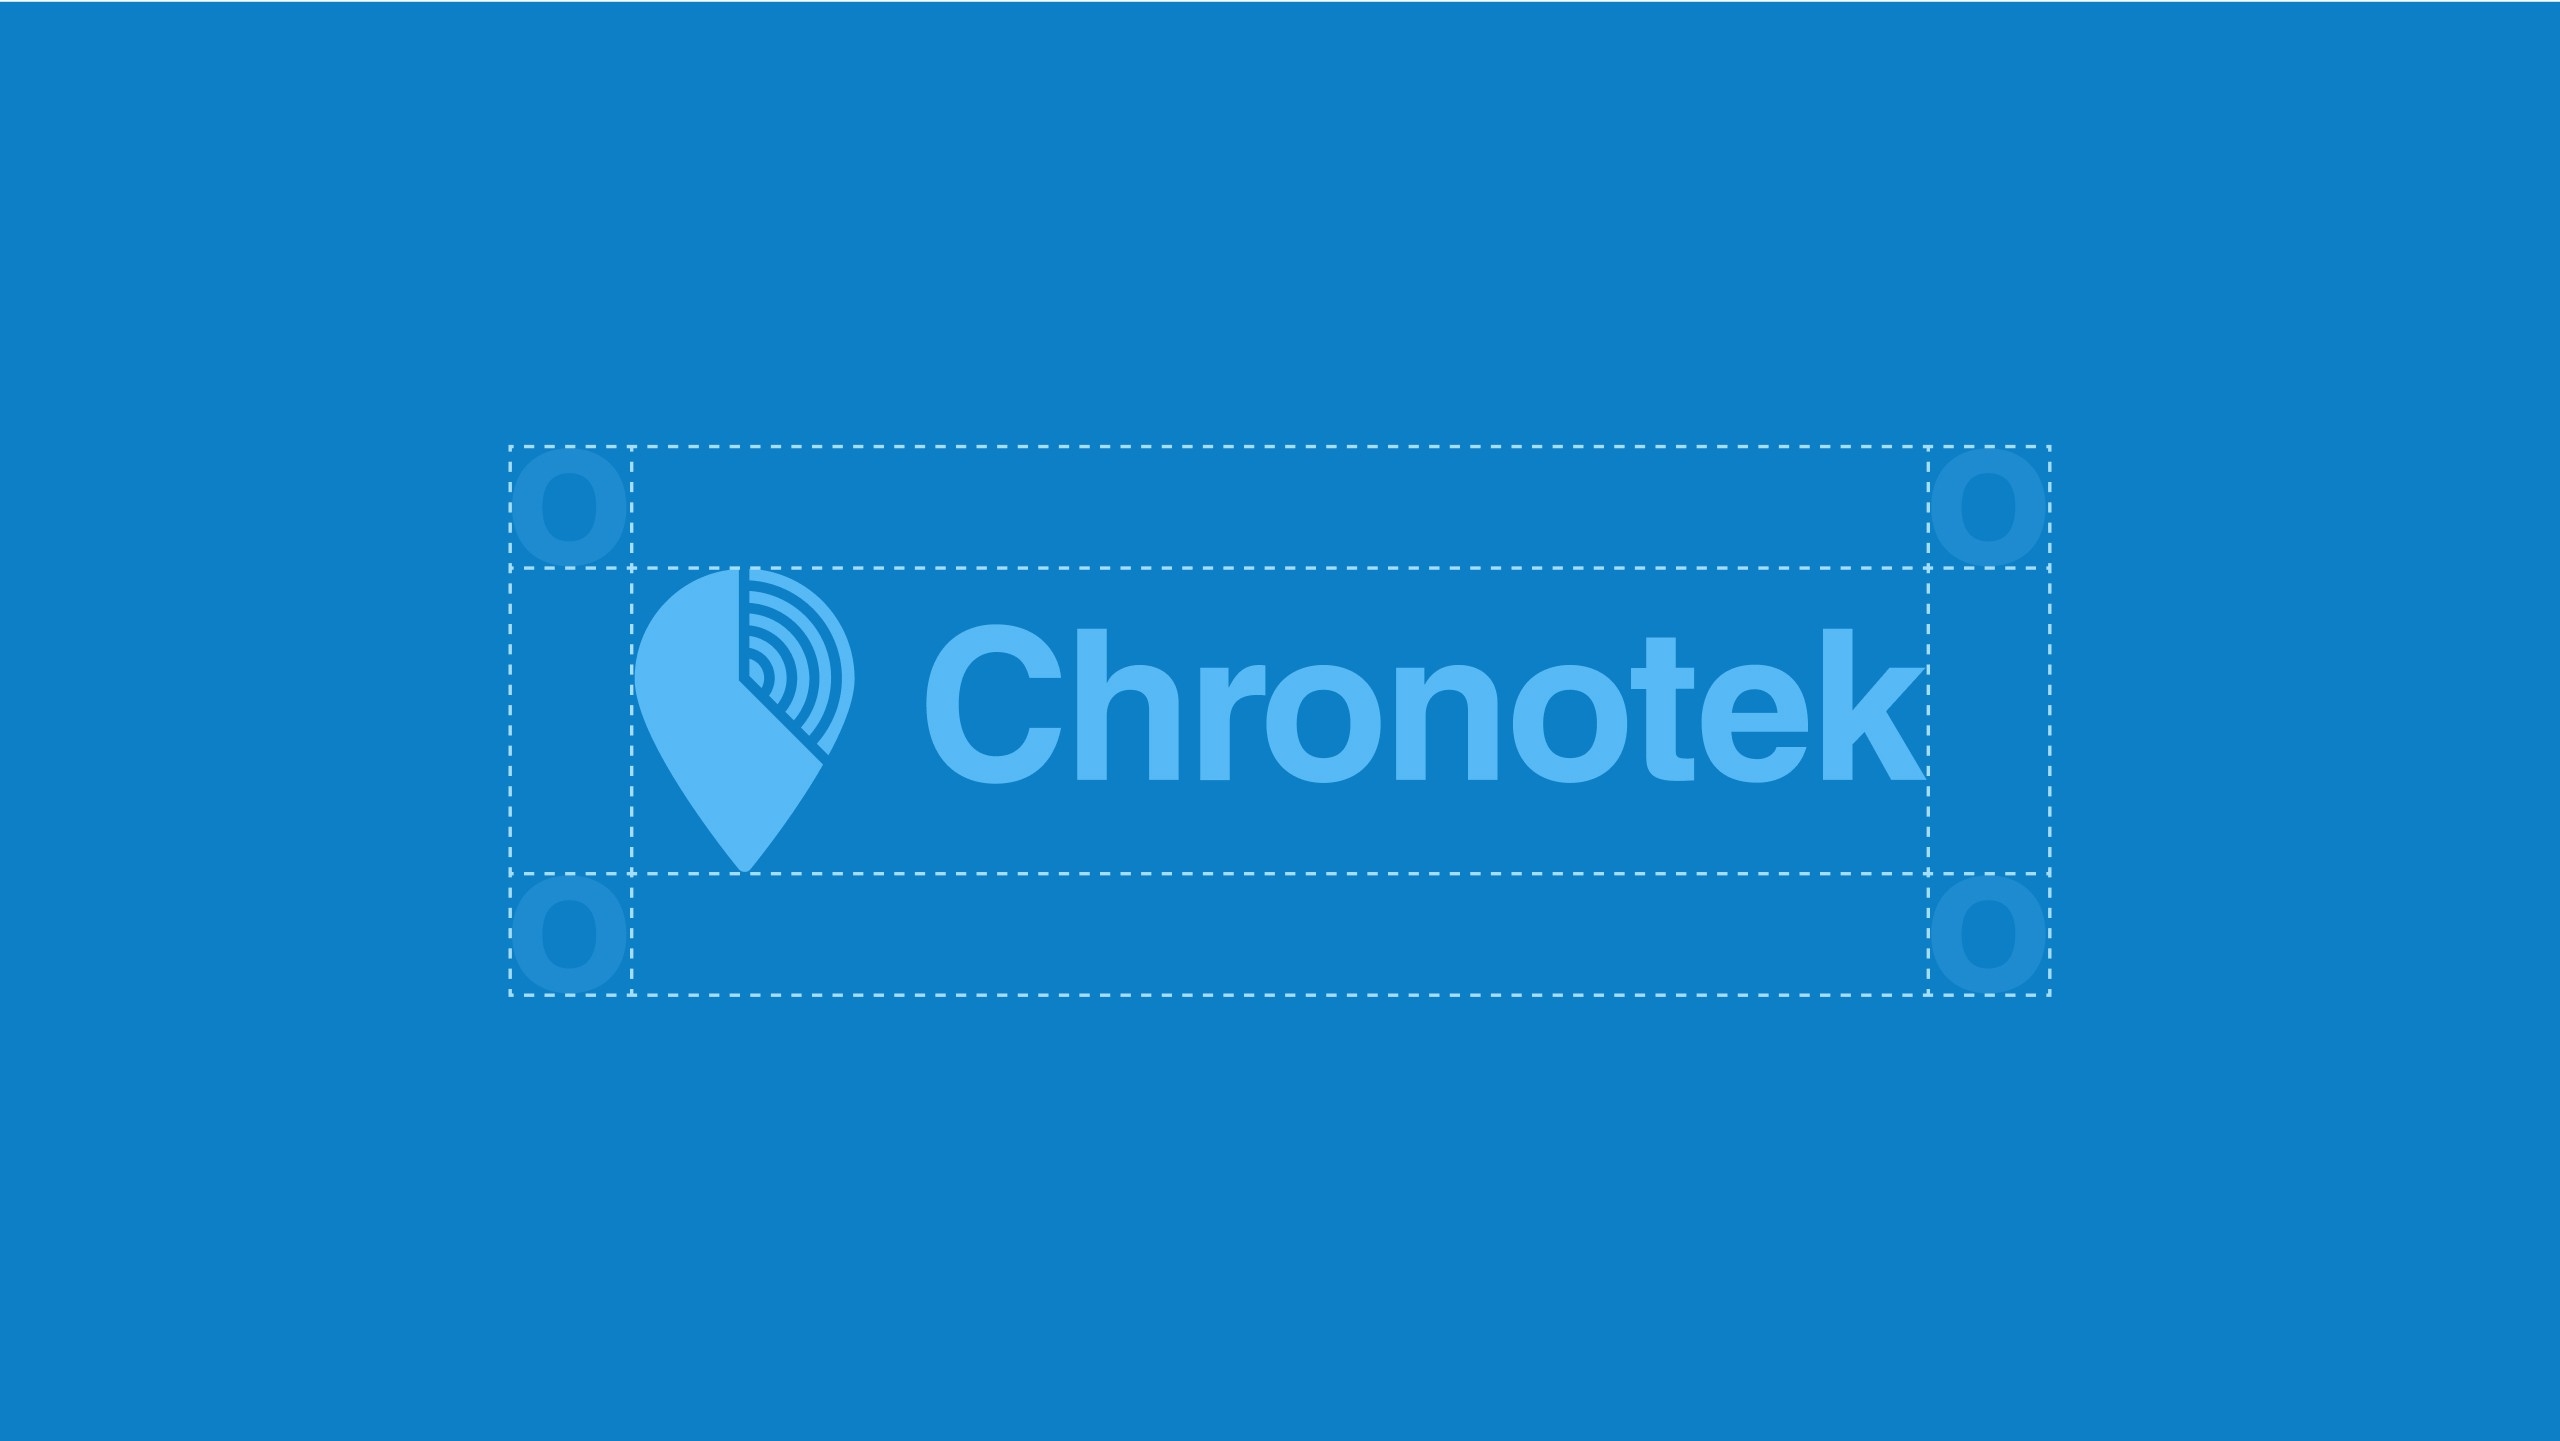 Chronotek app logo 